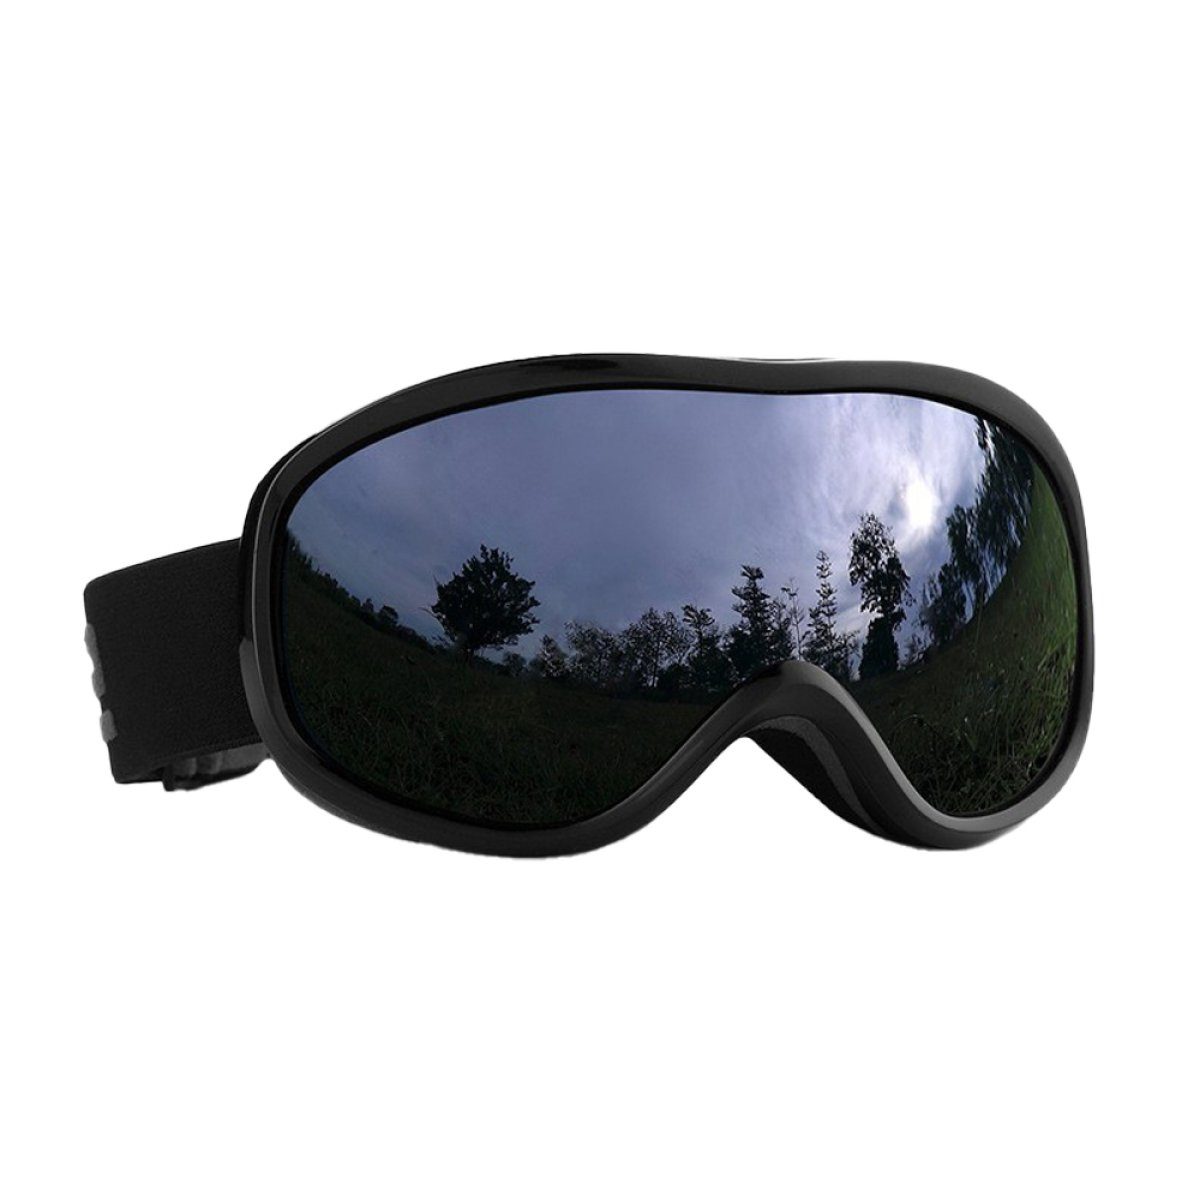 Beschlagen, Herren,UV-Schutz ZmdecQna Skibrille Damen das grau Reduziert Skibrille für für Skibrille und brillenträger, AugenschutzUV-Schutz